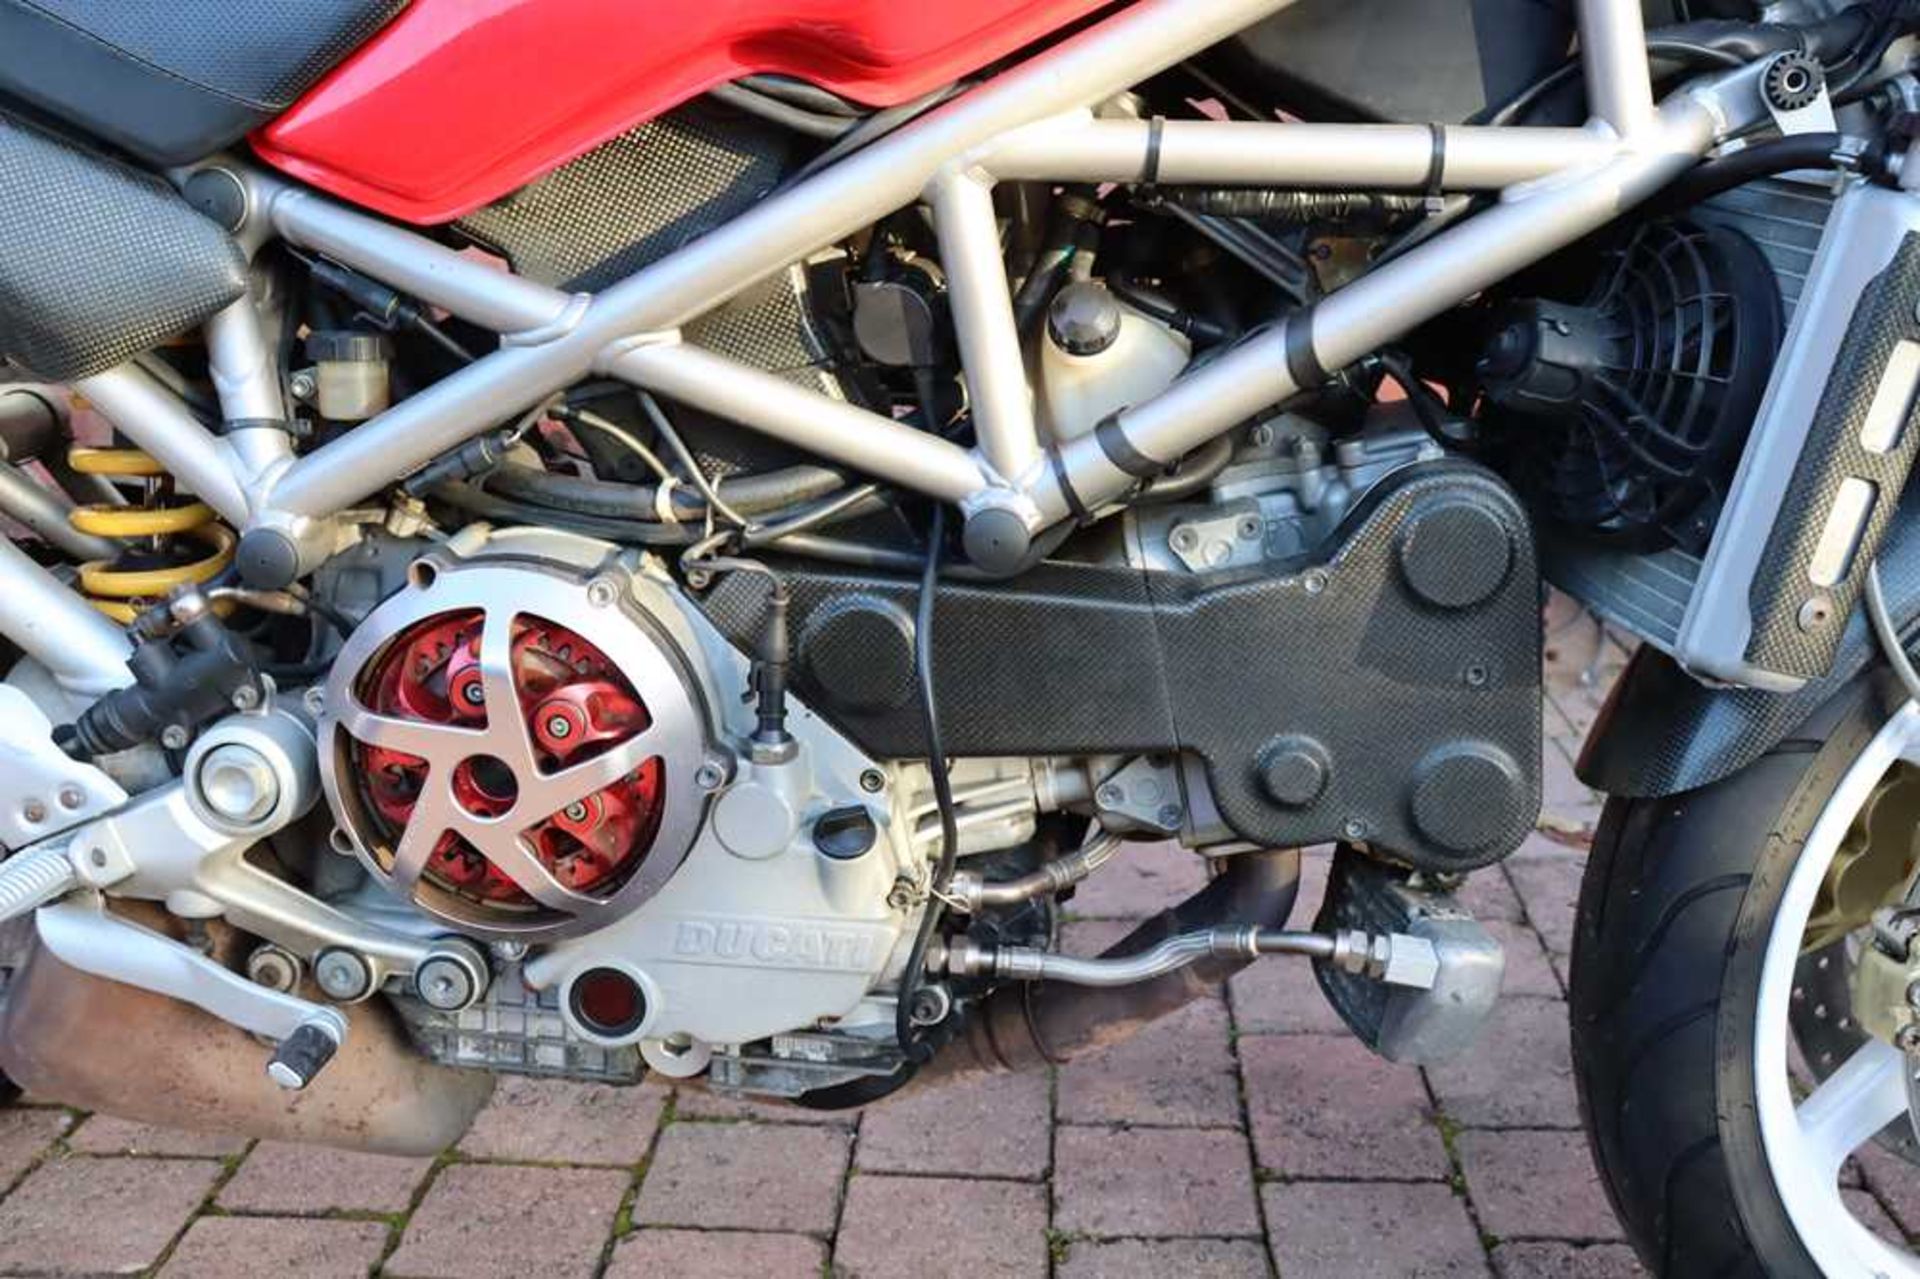 2003 Ducati Monster S4R 996 Desmoquattro Superbike engine - Image 40 of 54